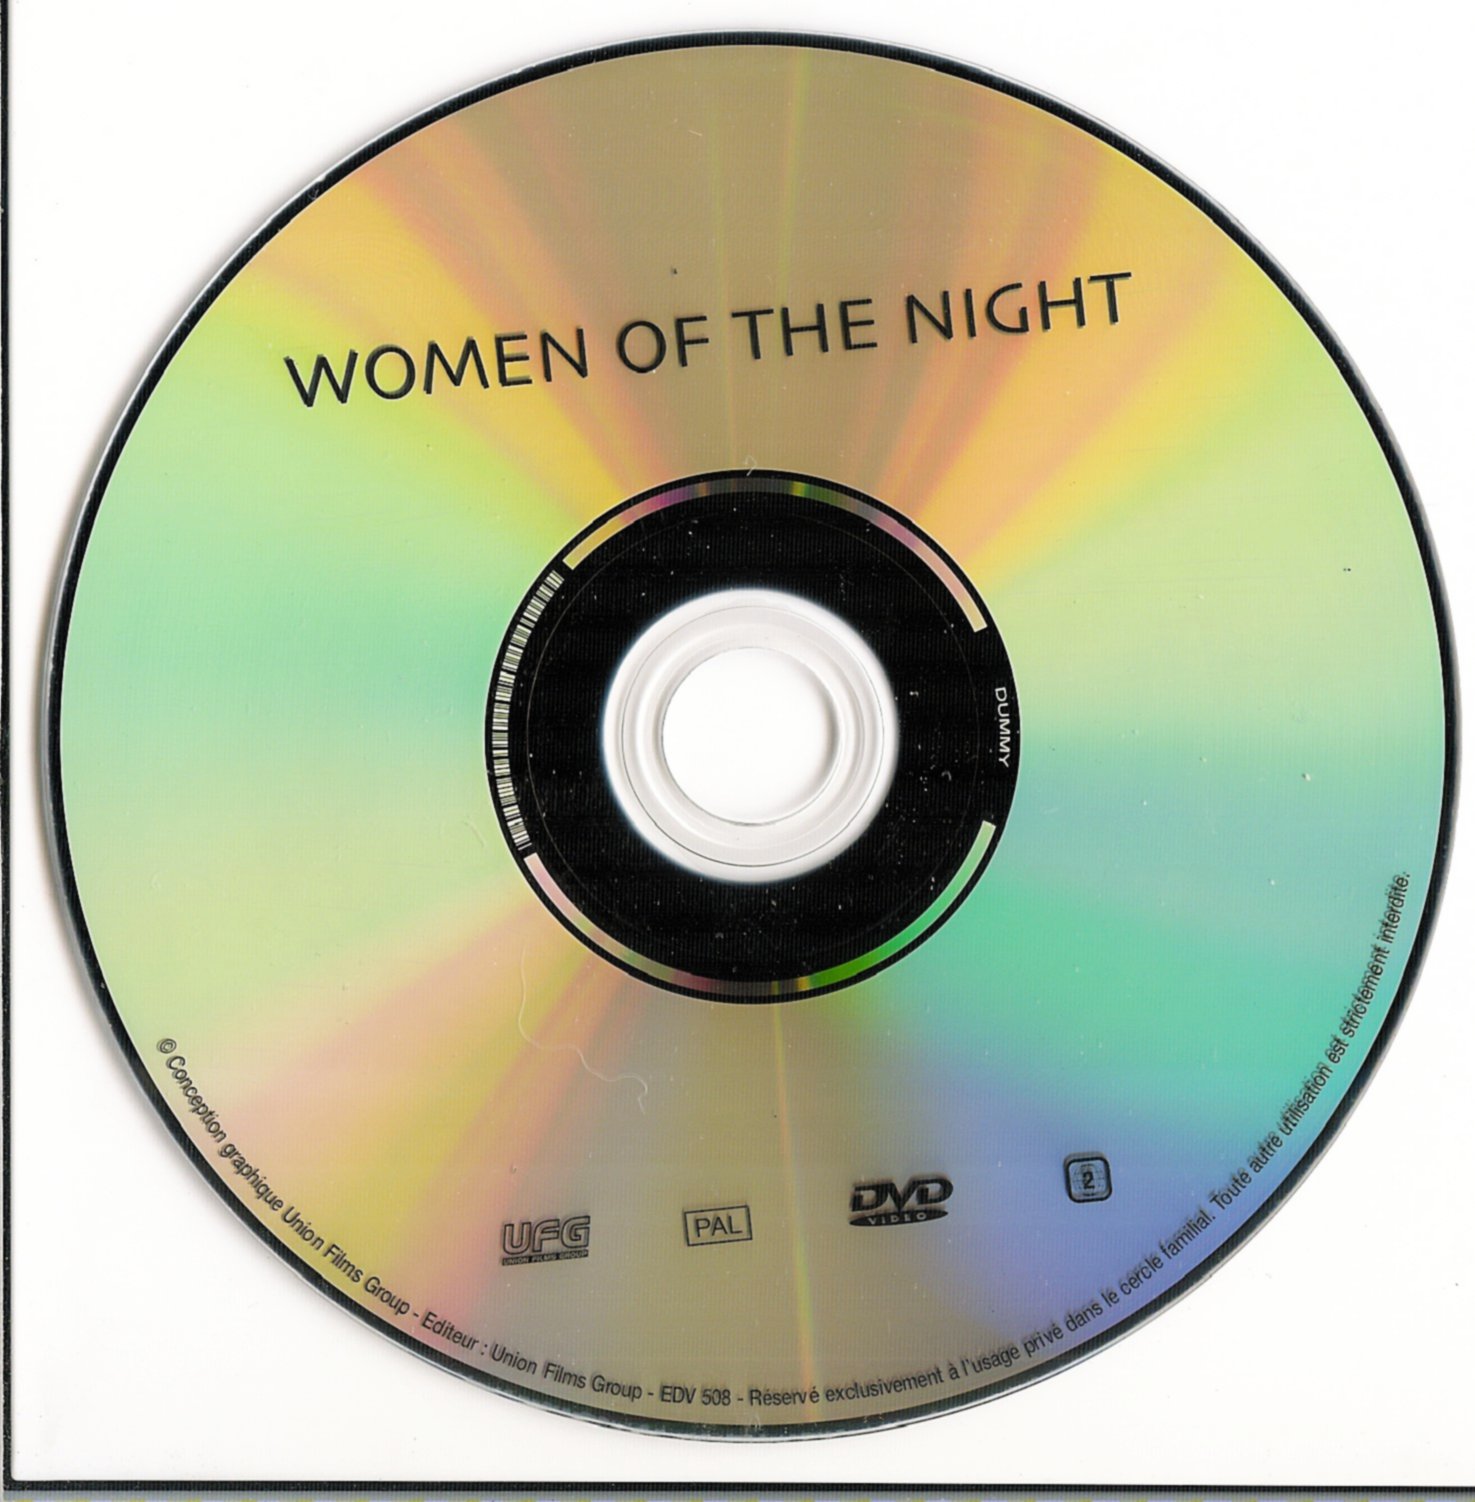 Women of the night